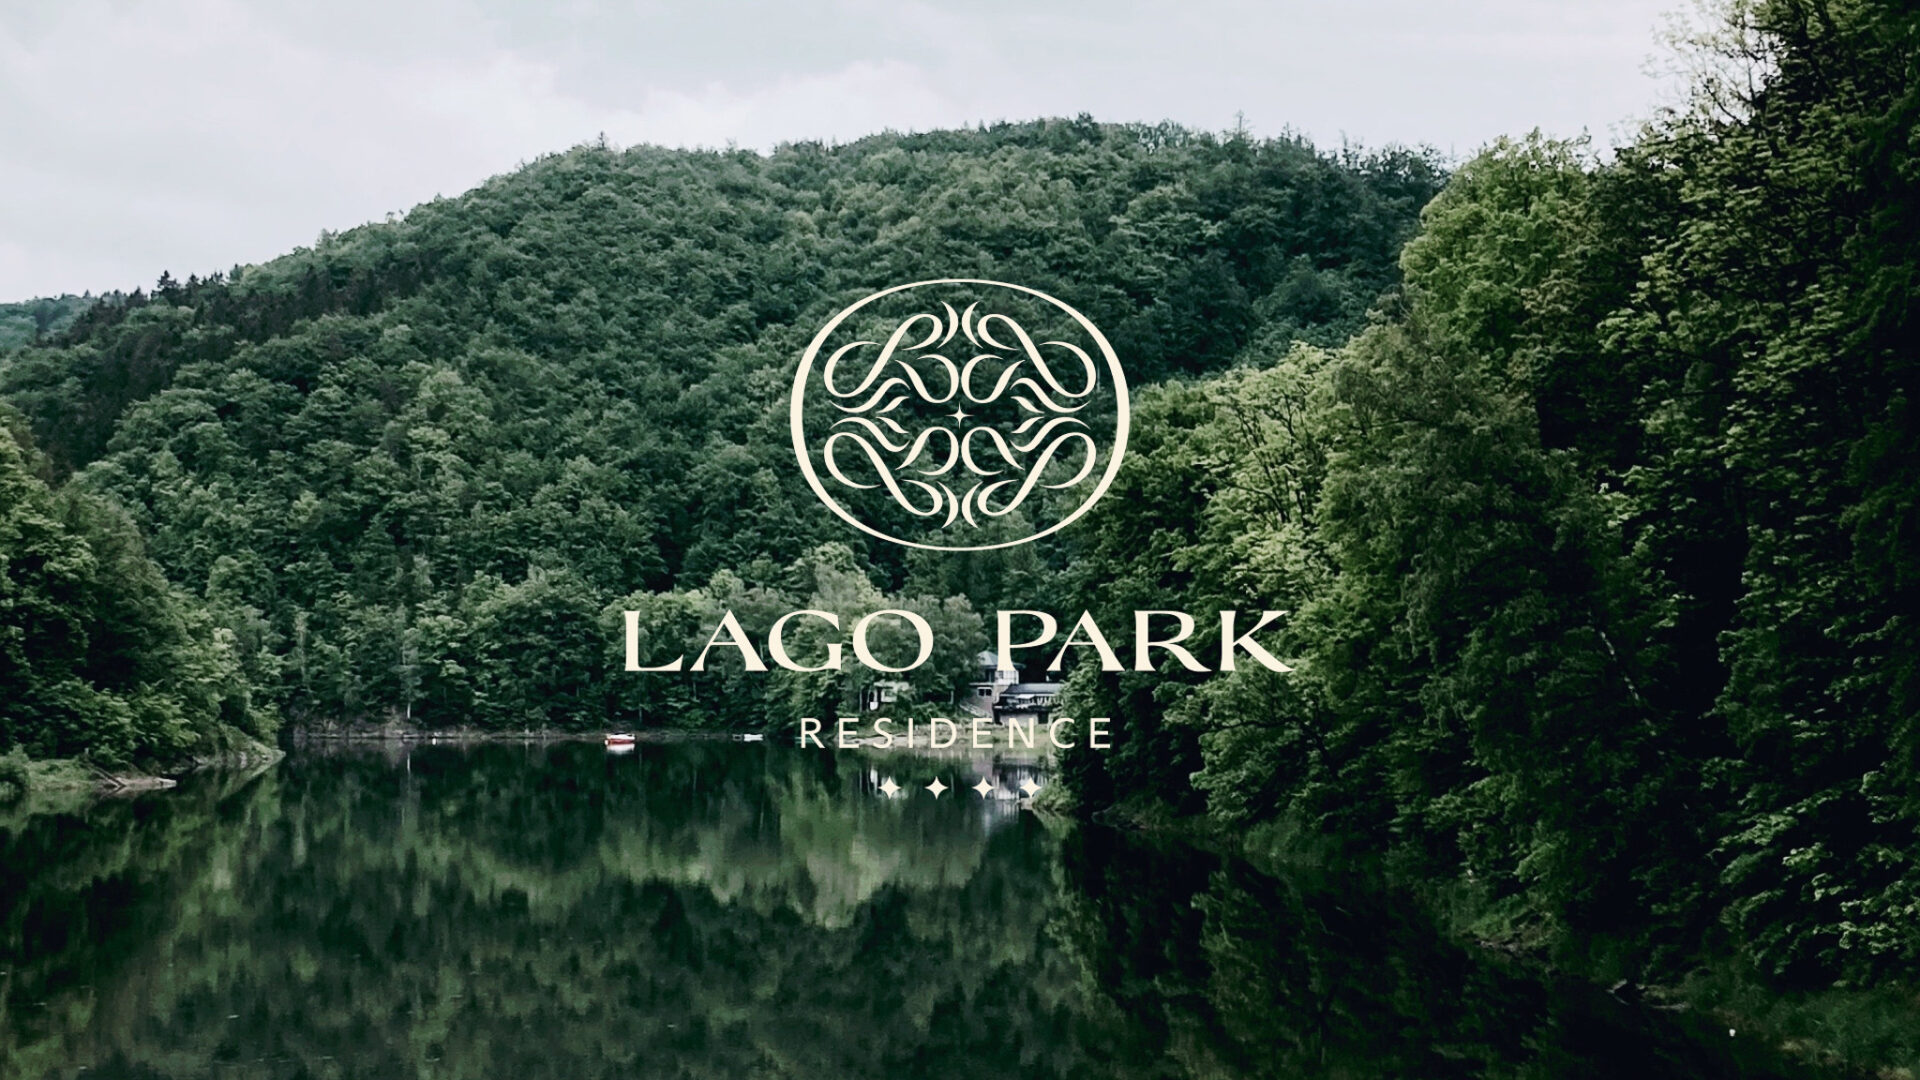 Lago Park